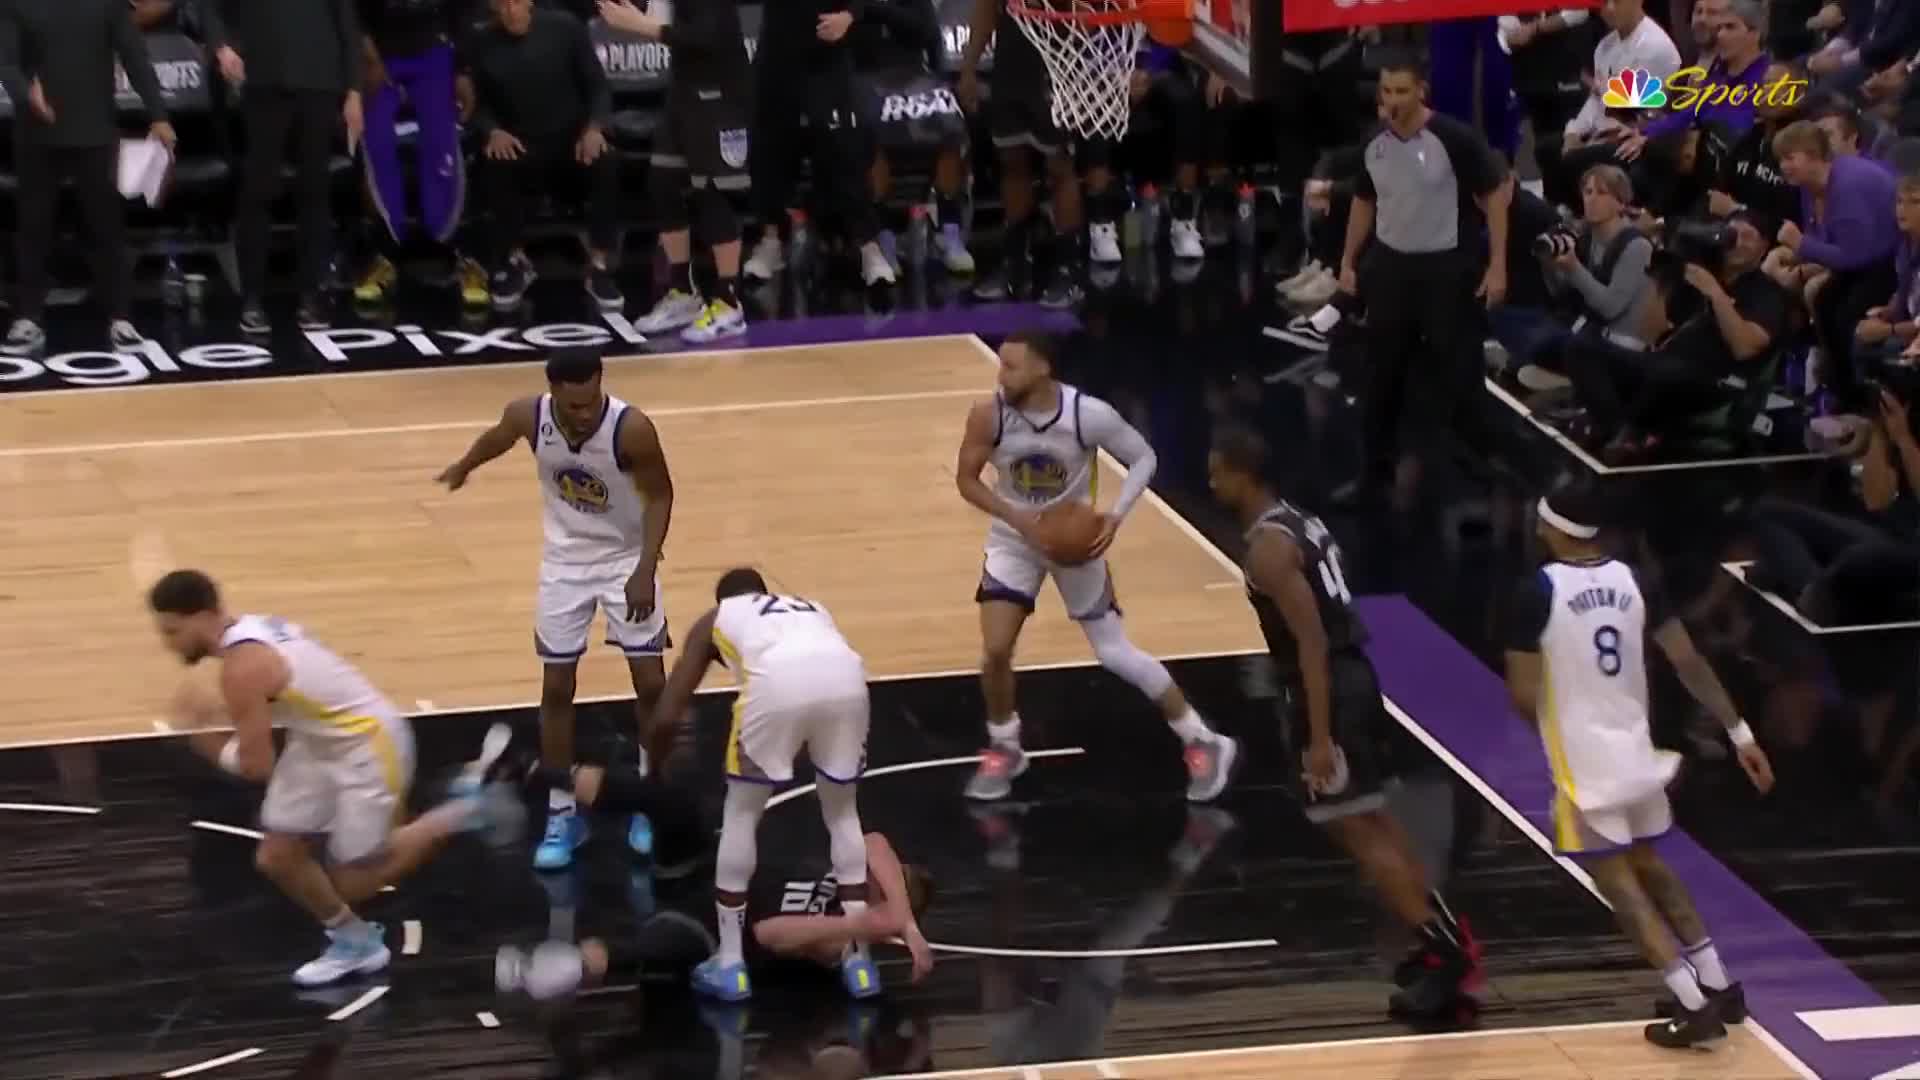 Video - Clip: Kinh hoàng hình ảnh cầu thủ bóng rổ bị đối thủ giẫm lên ngực